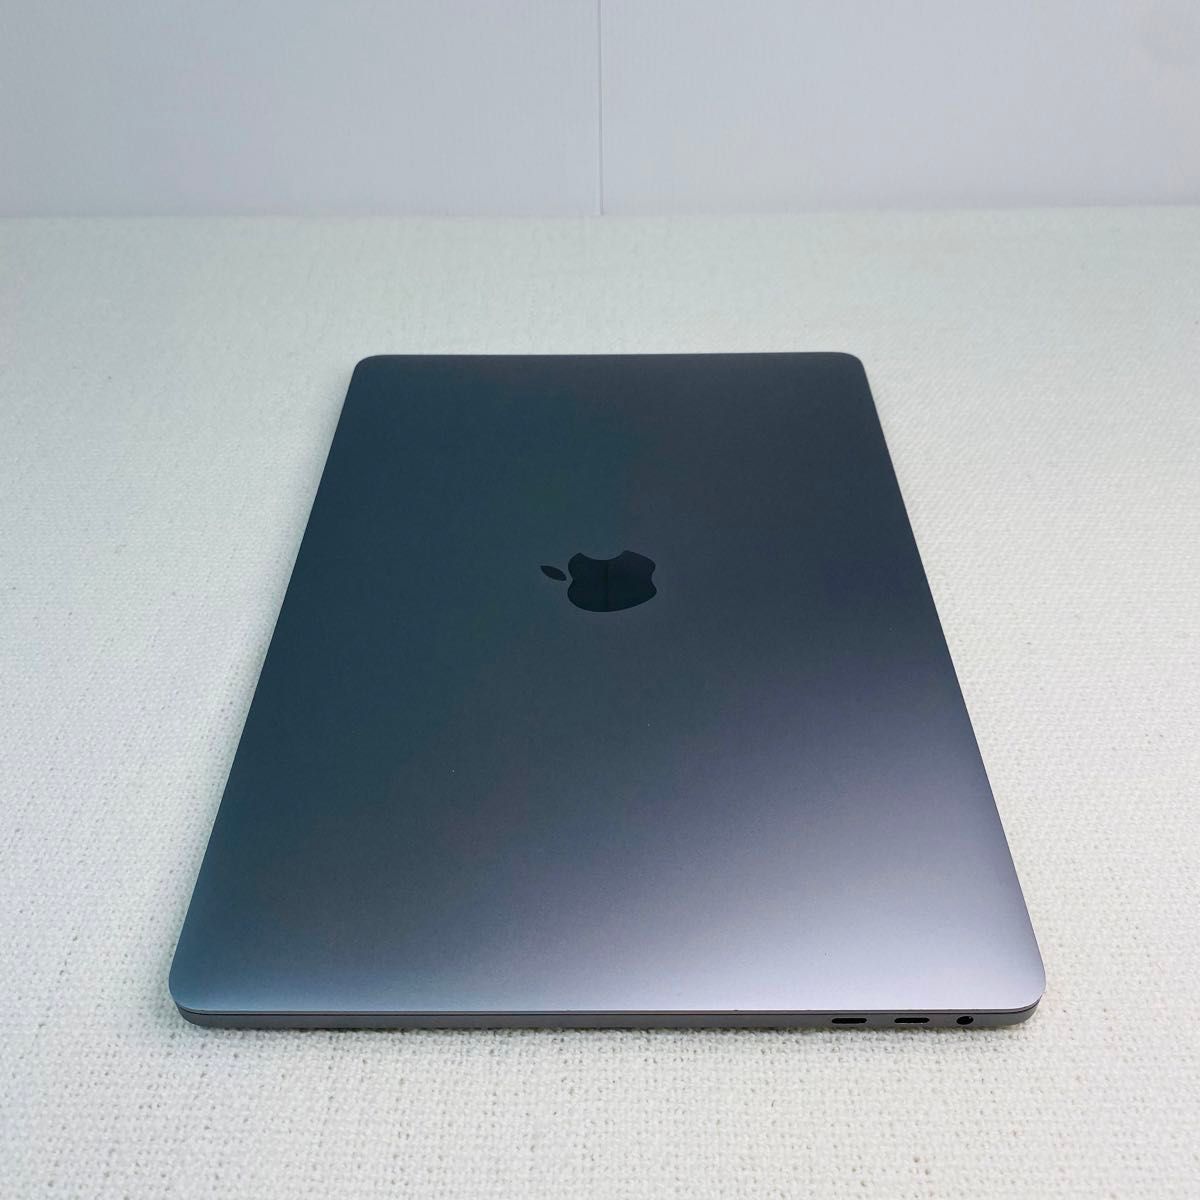 【匿名・即日発送】Macbook pro 2017 SSD250GB スペースグレー